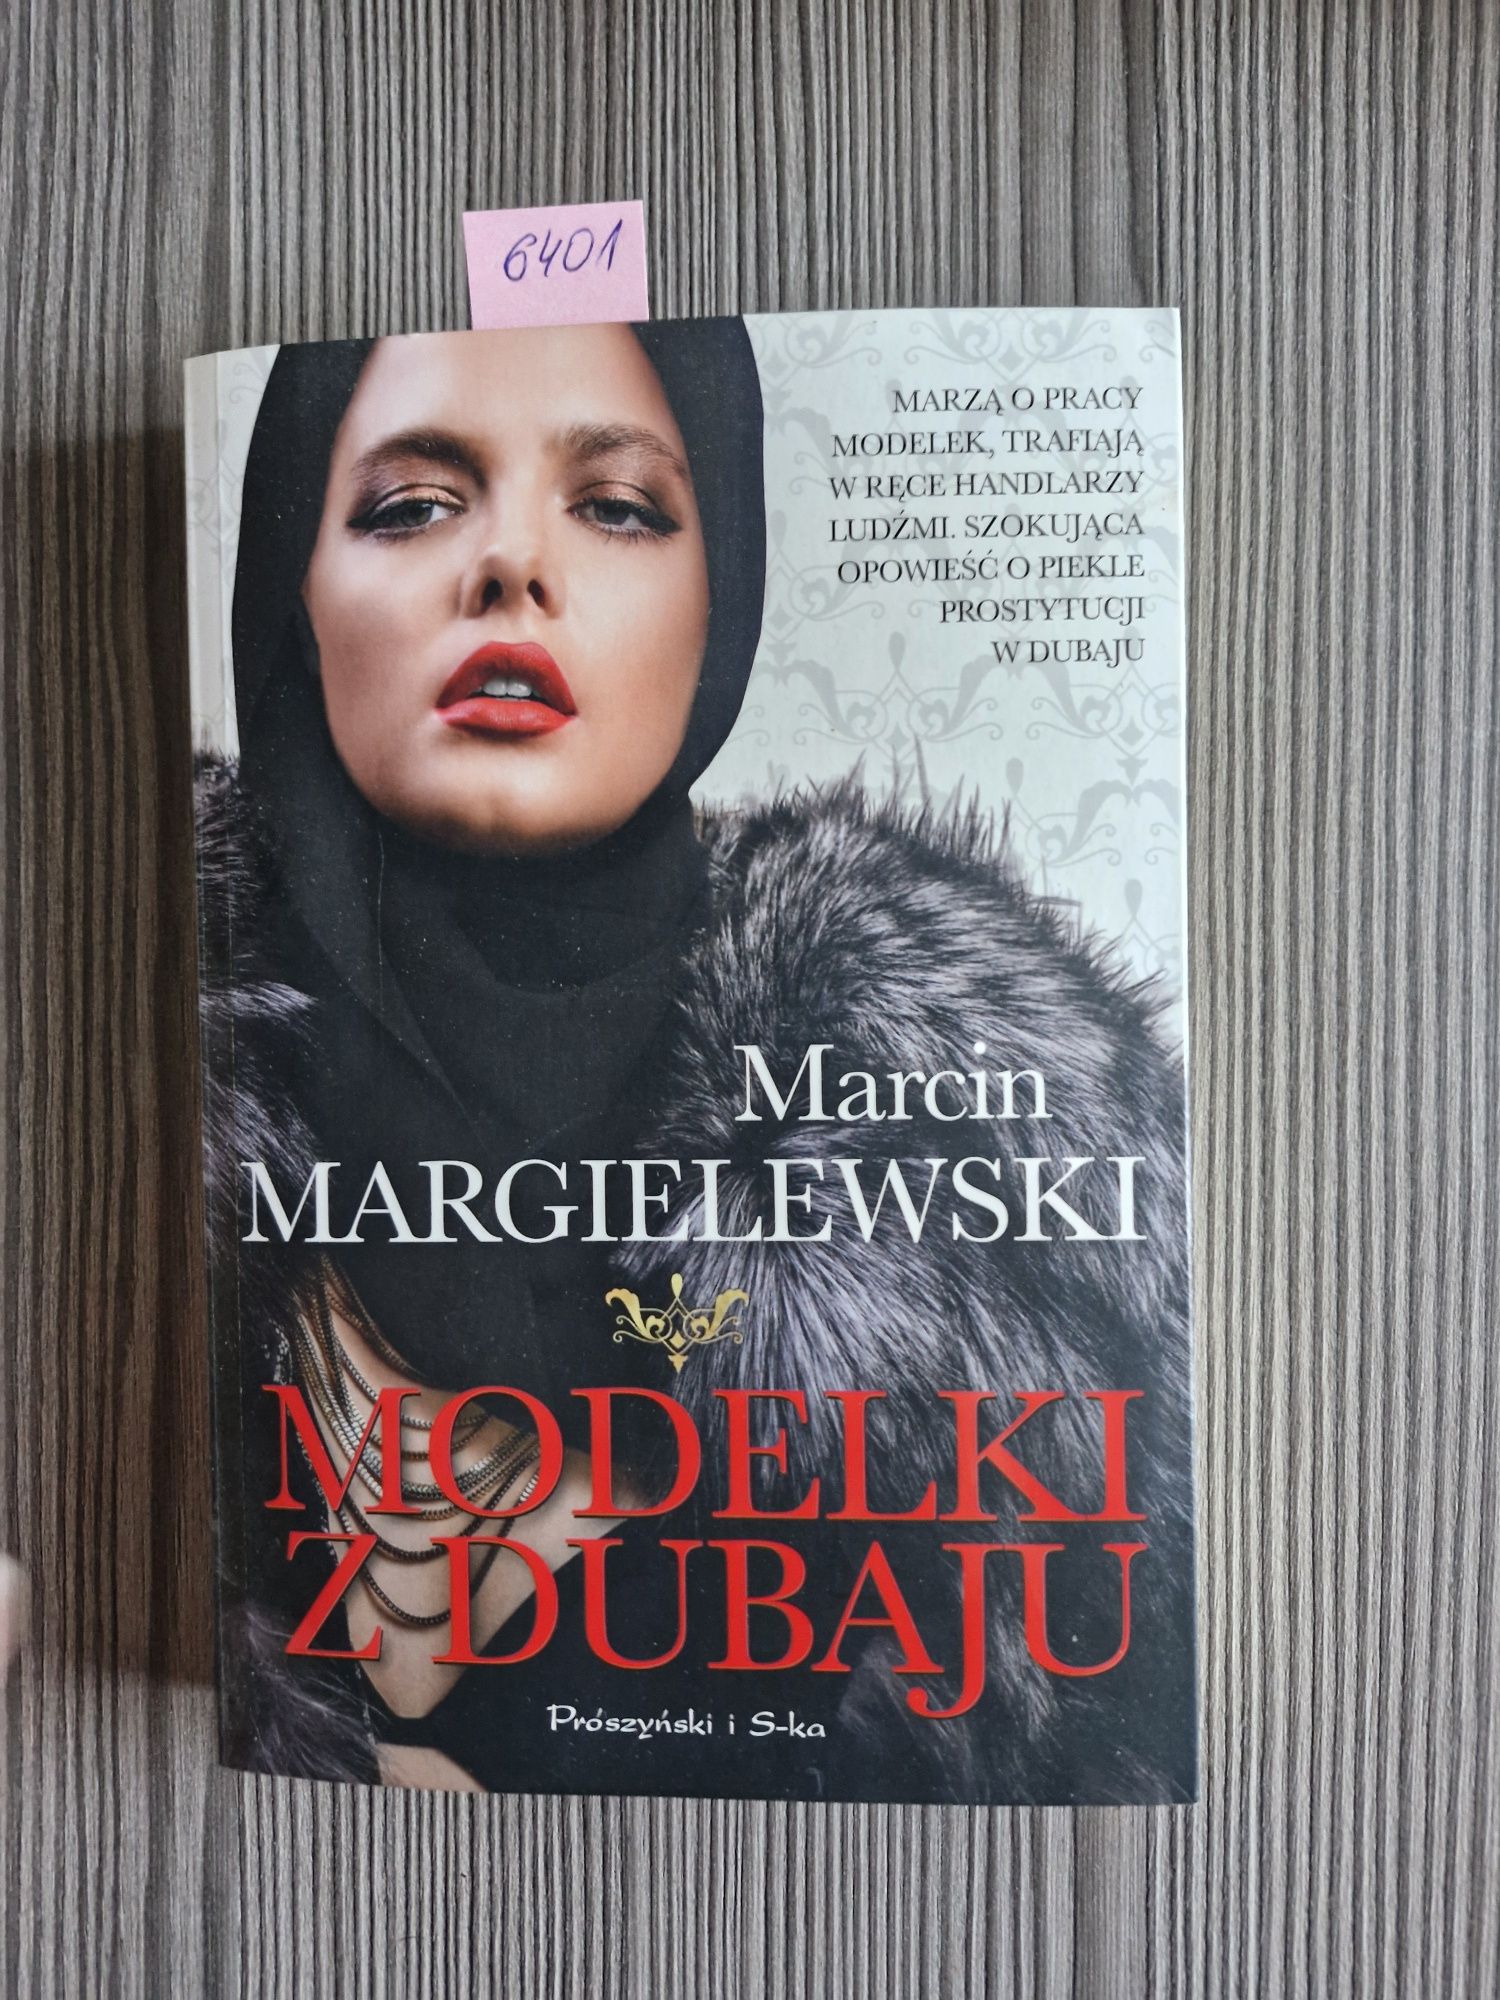 6401. "Modelki z Dubaju" Marcin Margielewski